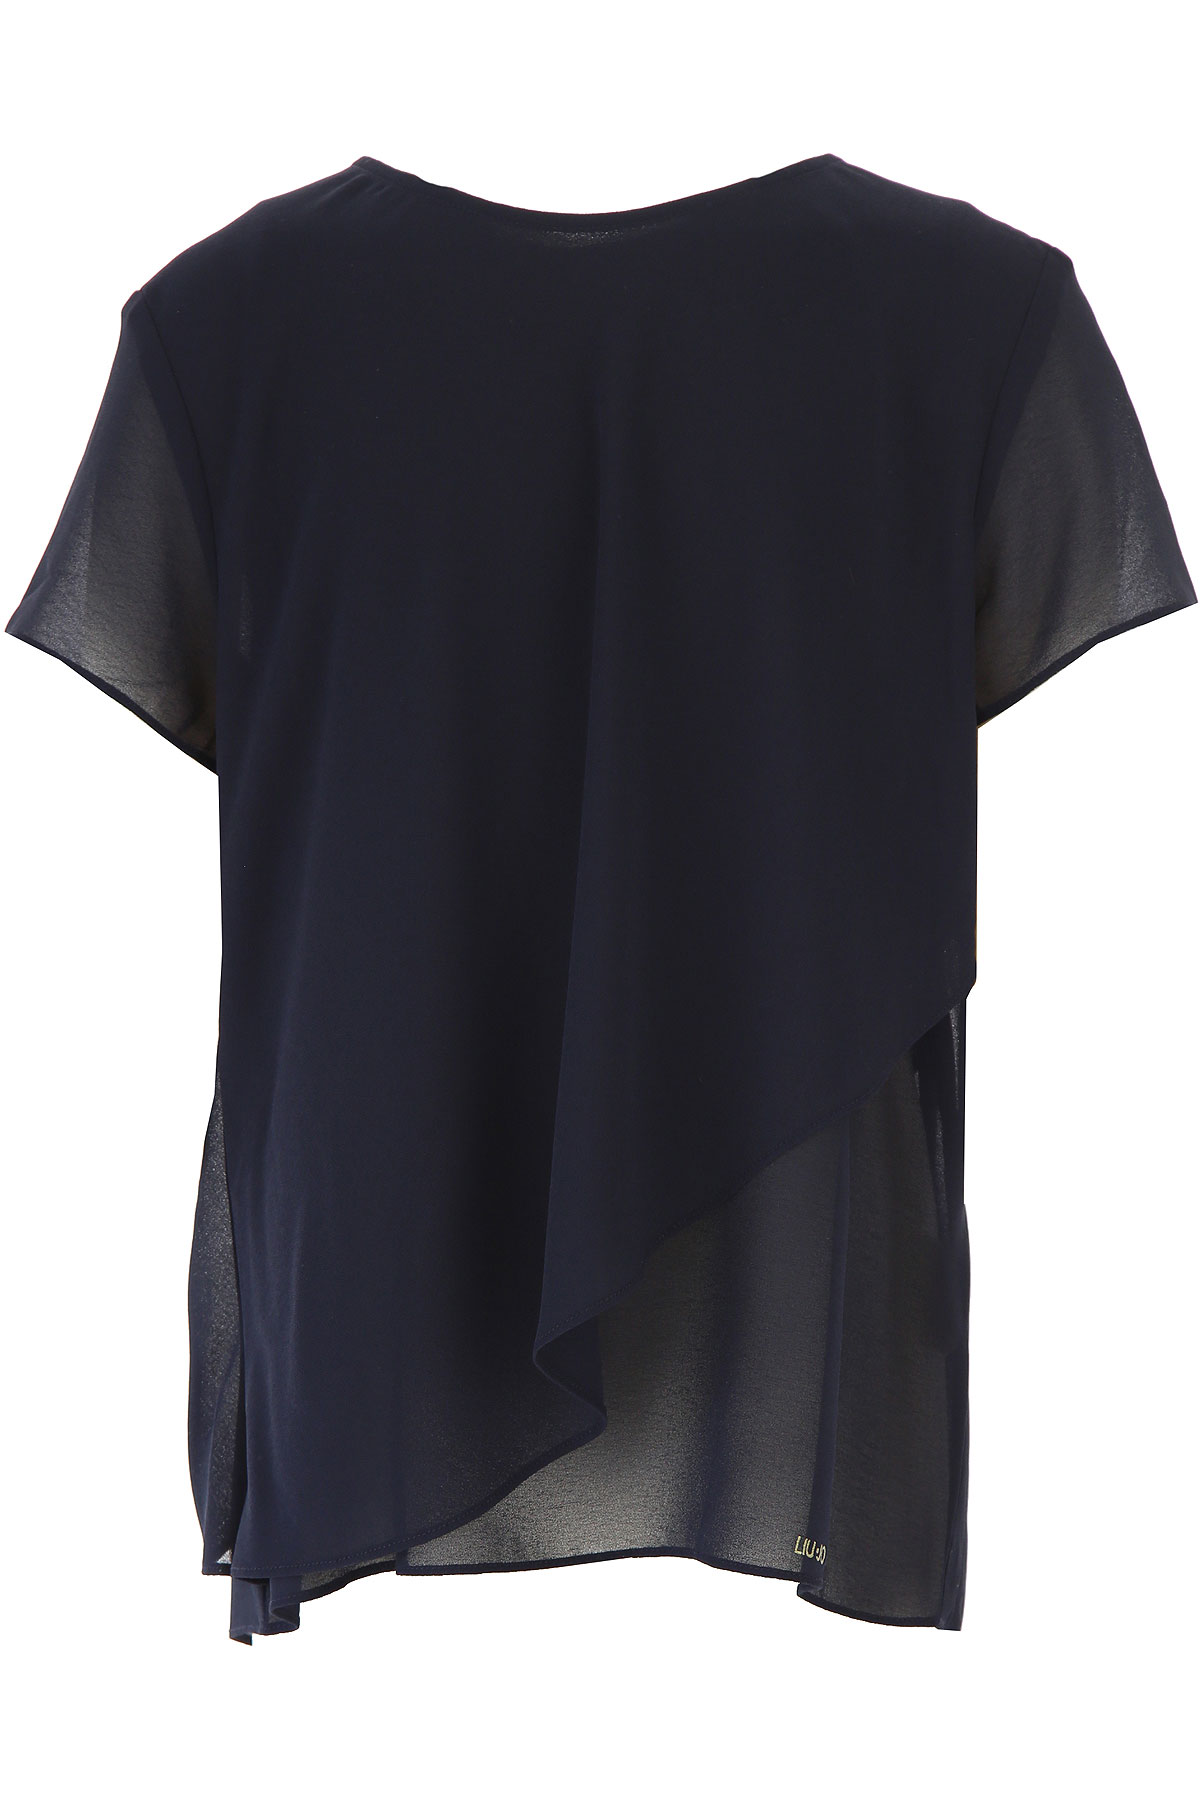 Liu Jo Kinder T-Shirt für Mädchen Günstig im Sale, Marine blau, Polyester, 2017, 10Y 8Y